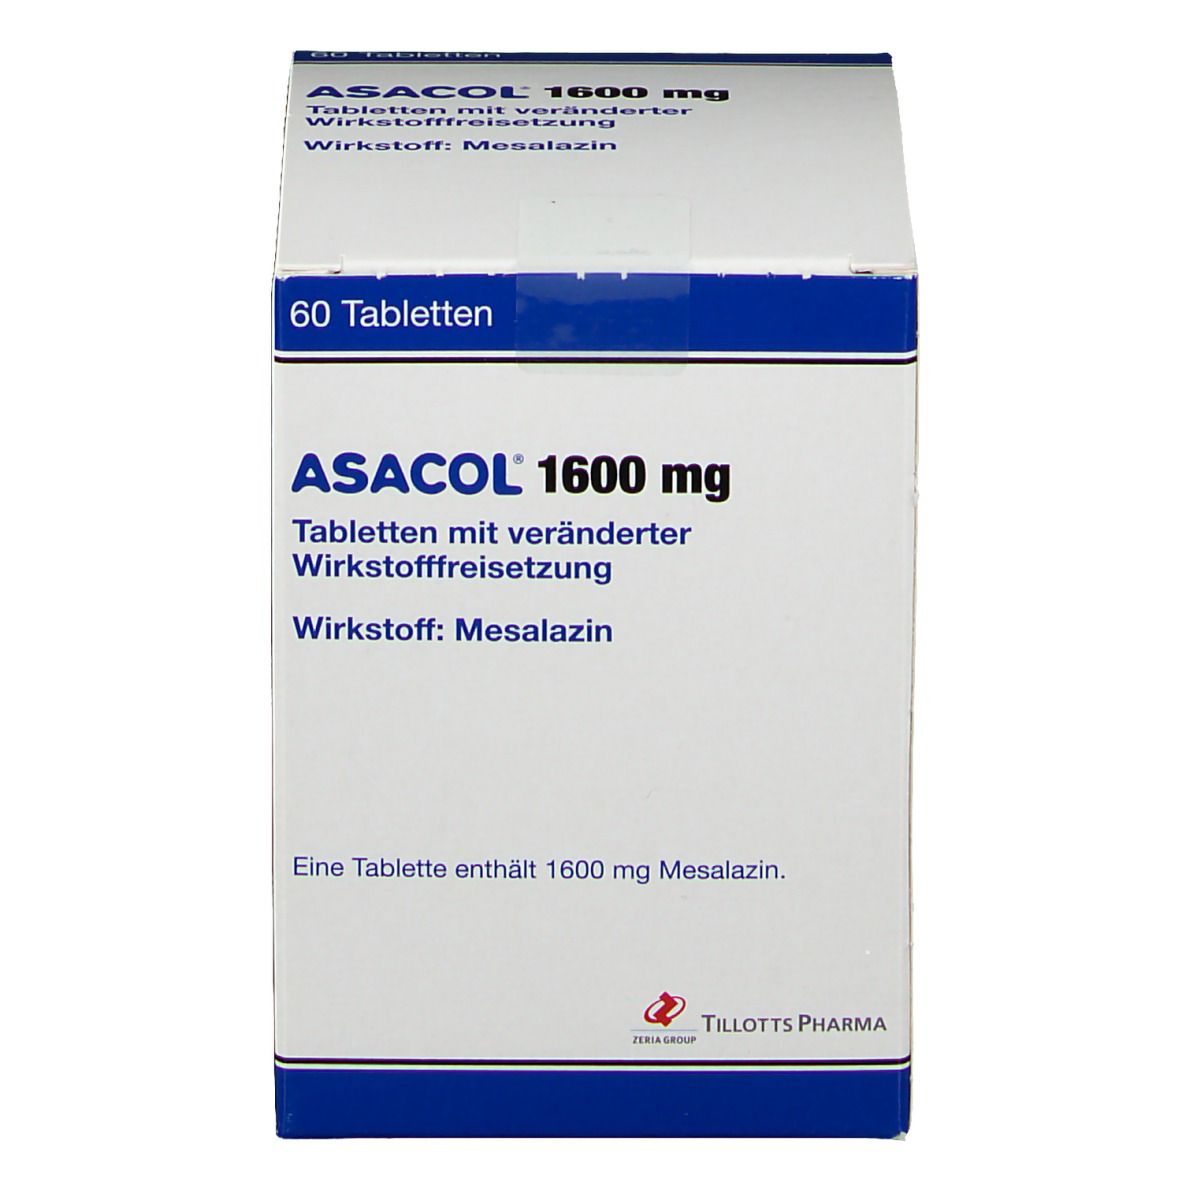 ASACOL® 1600 mg